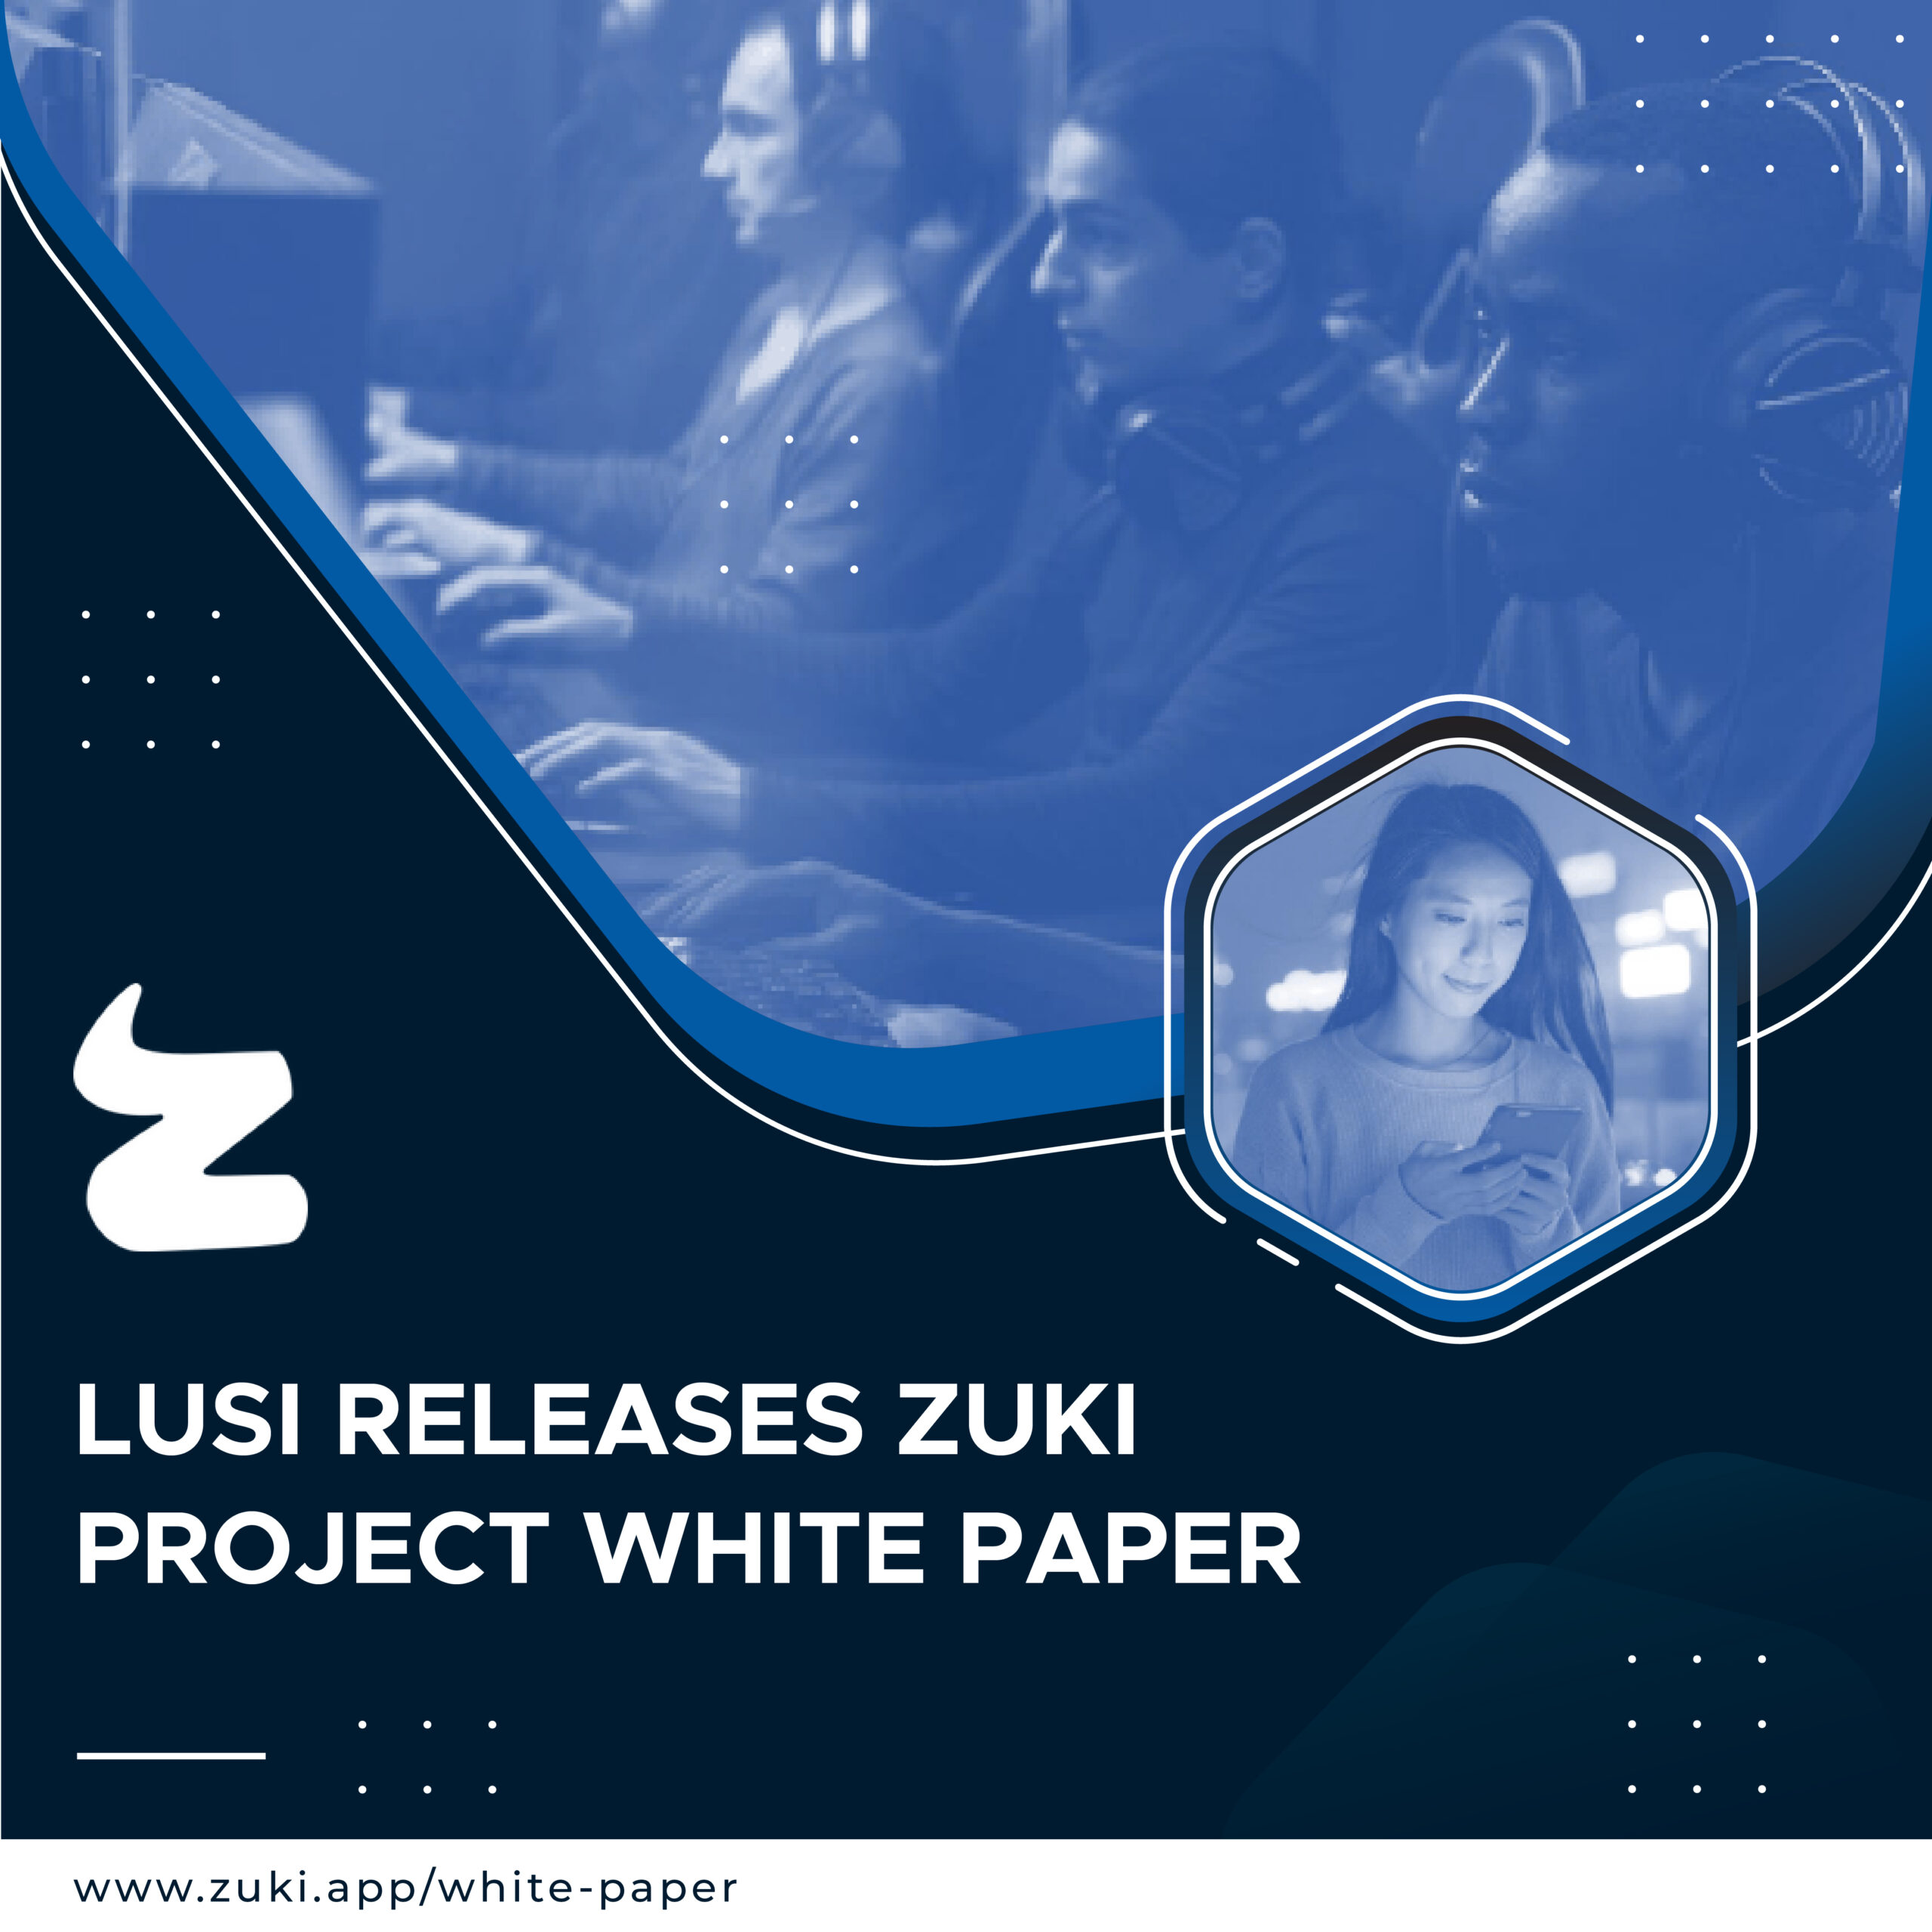 LUSI’s Zuki Project White Paper